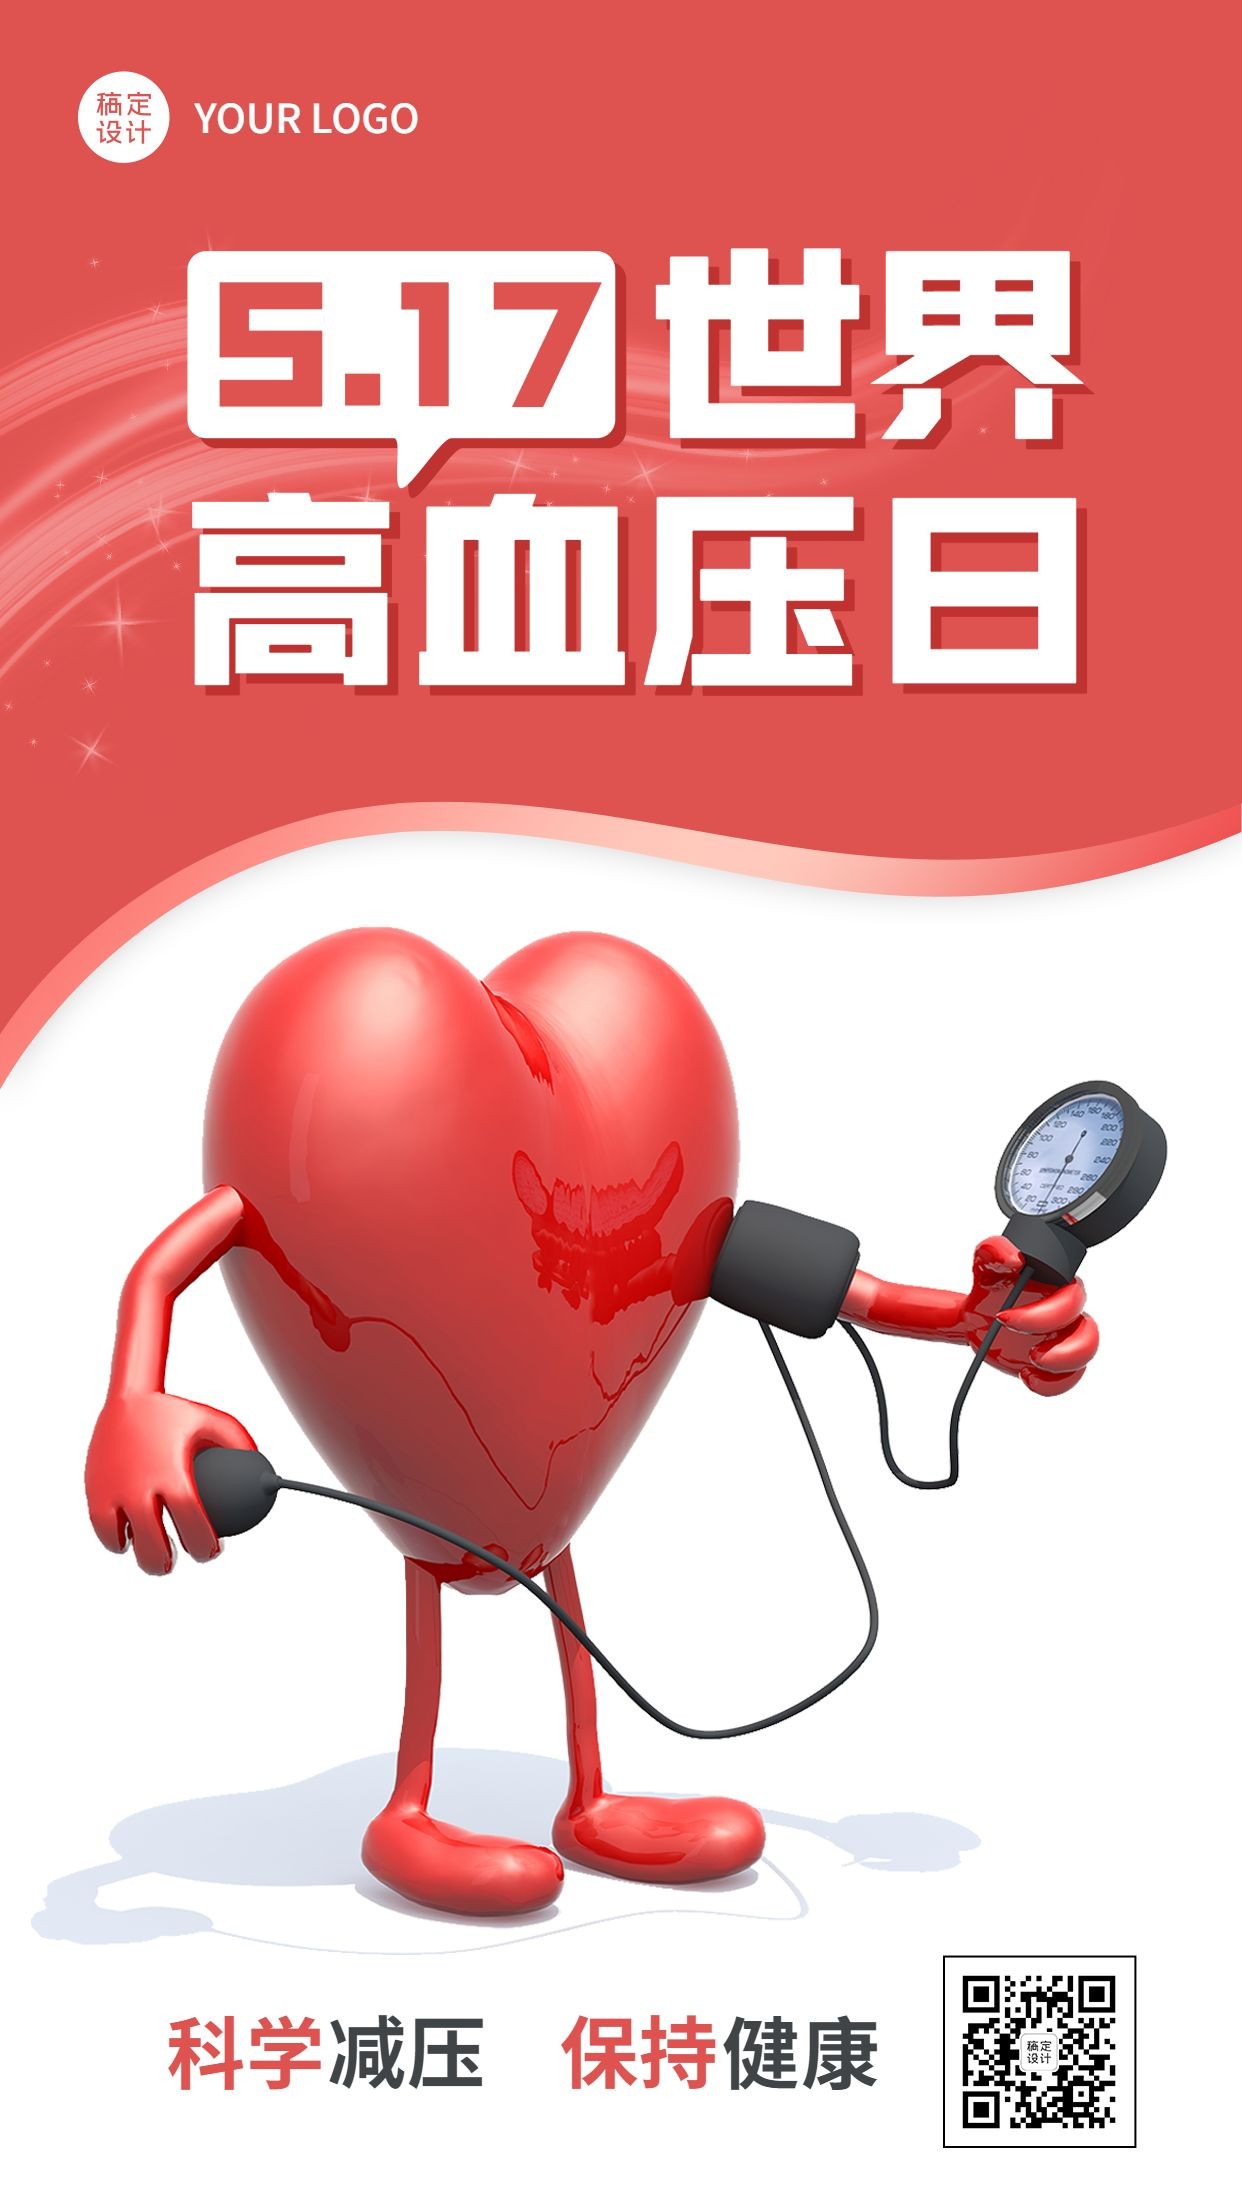 世界高血压日节日宣传手机海报预览效果